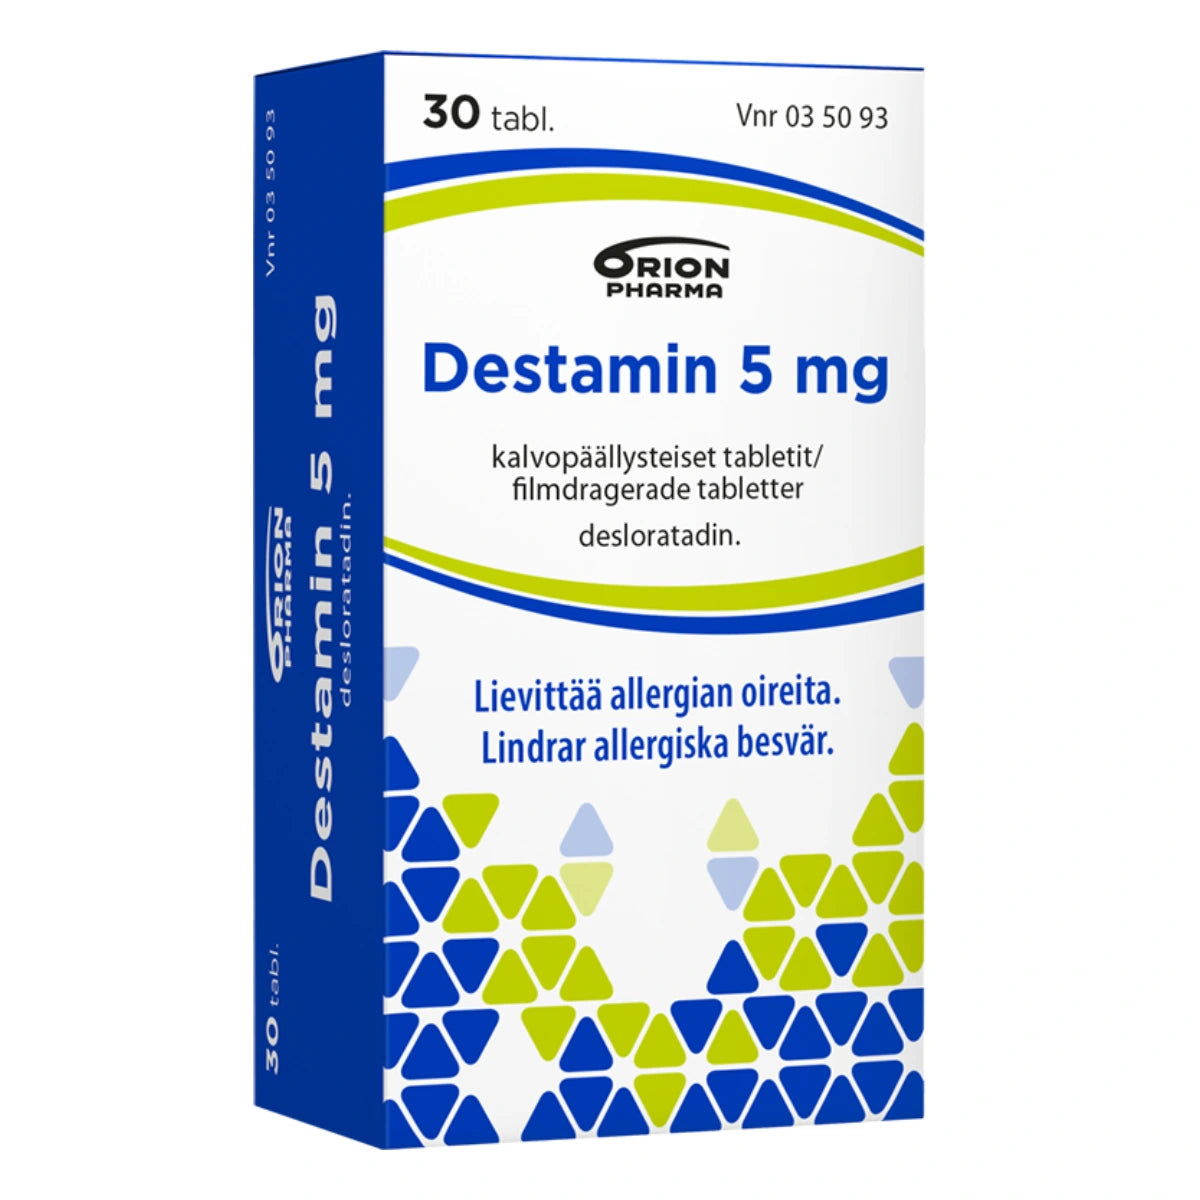 DESTAMIN 5 mg tabletti 30 kpl lievittää allergian oireita